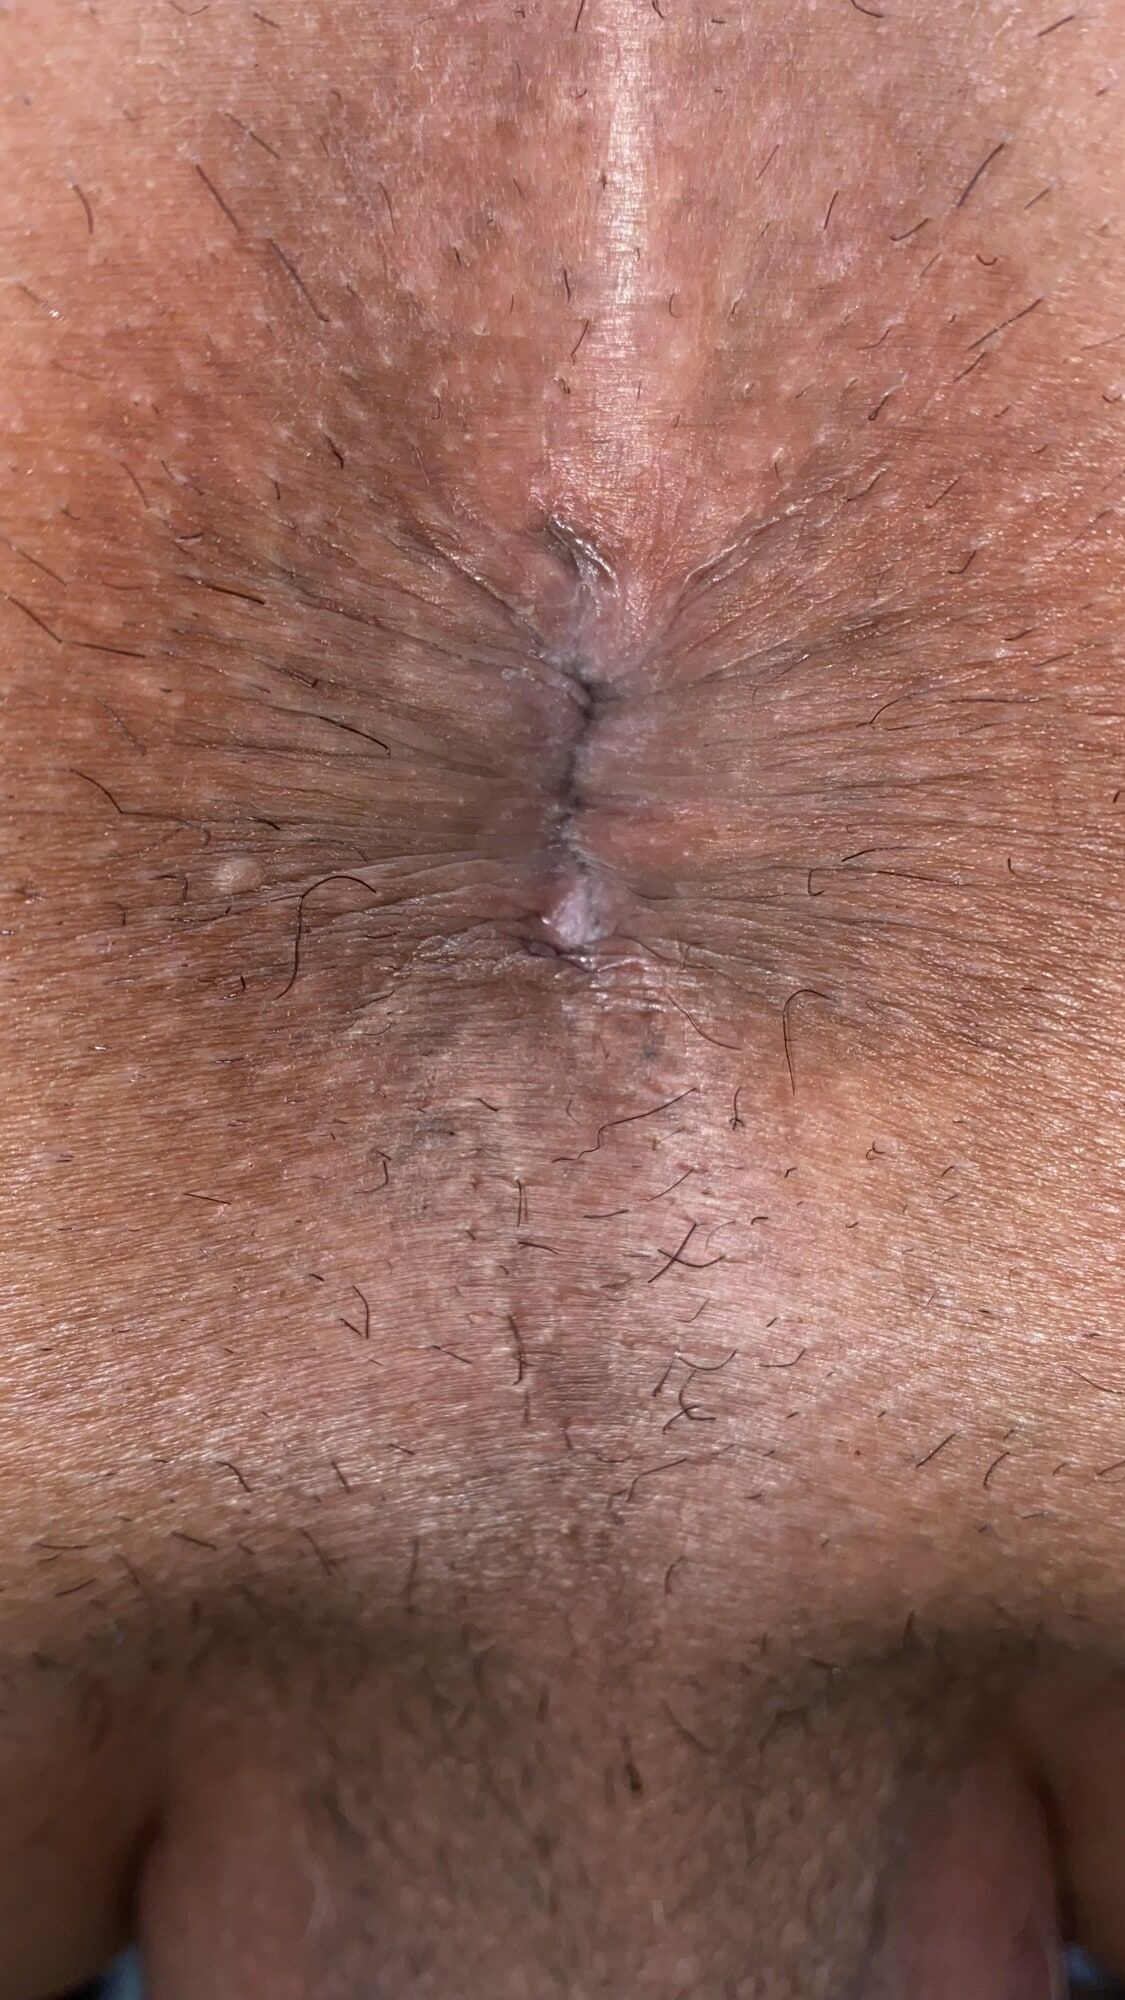 Close-up of a man's anus #47